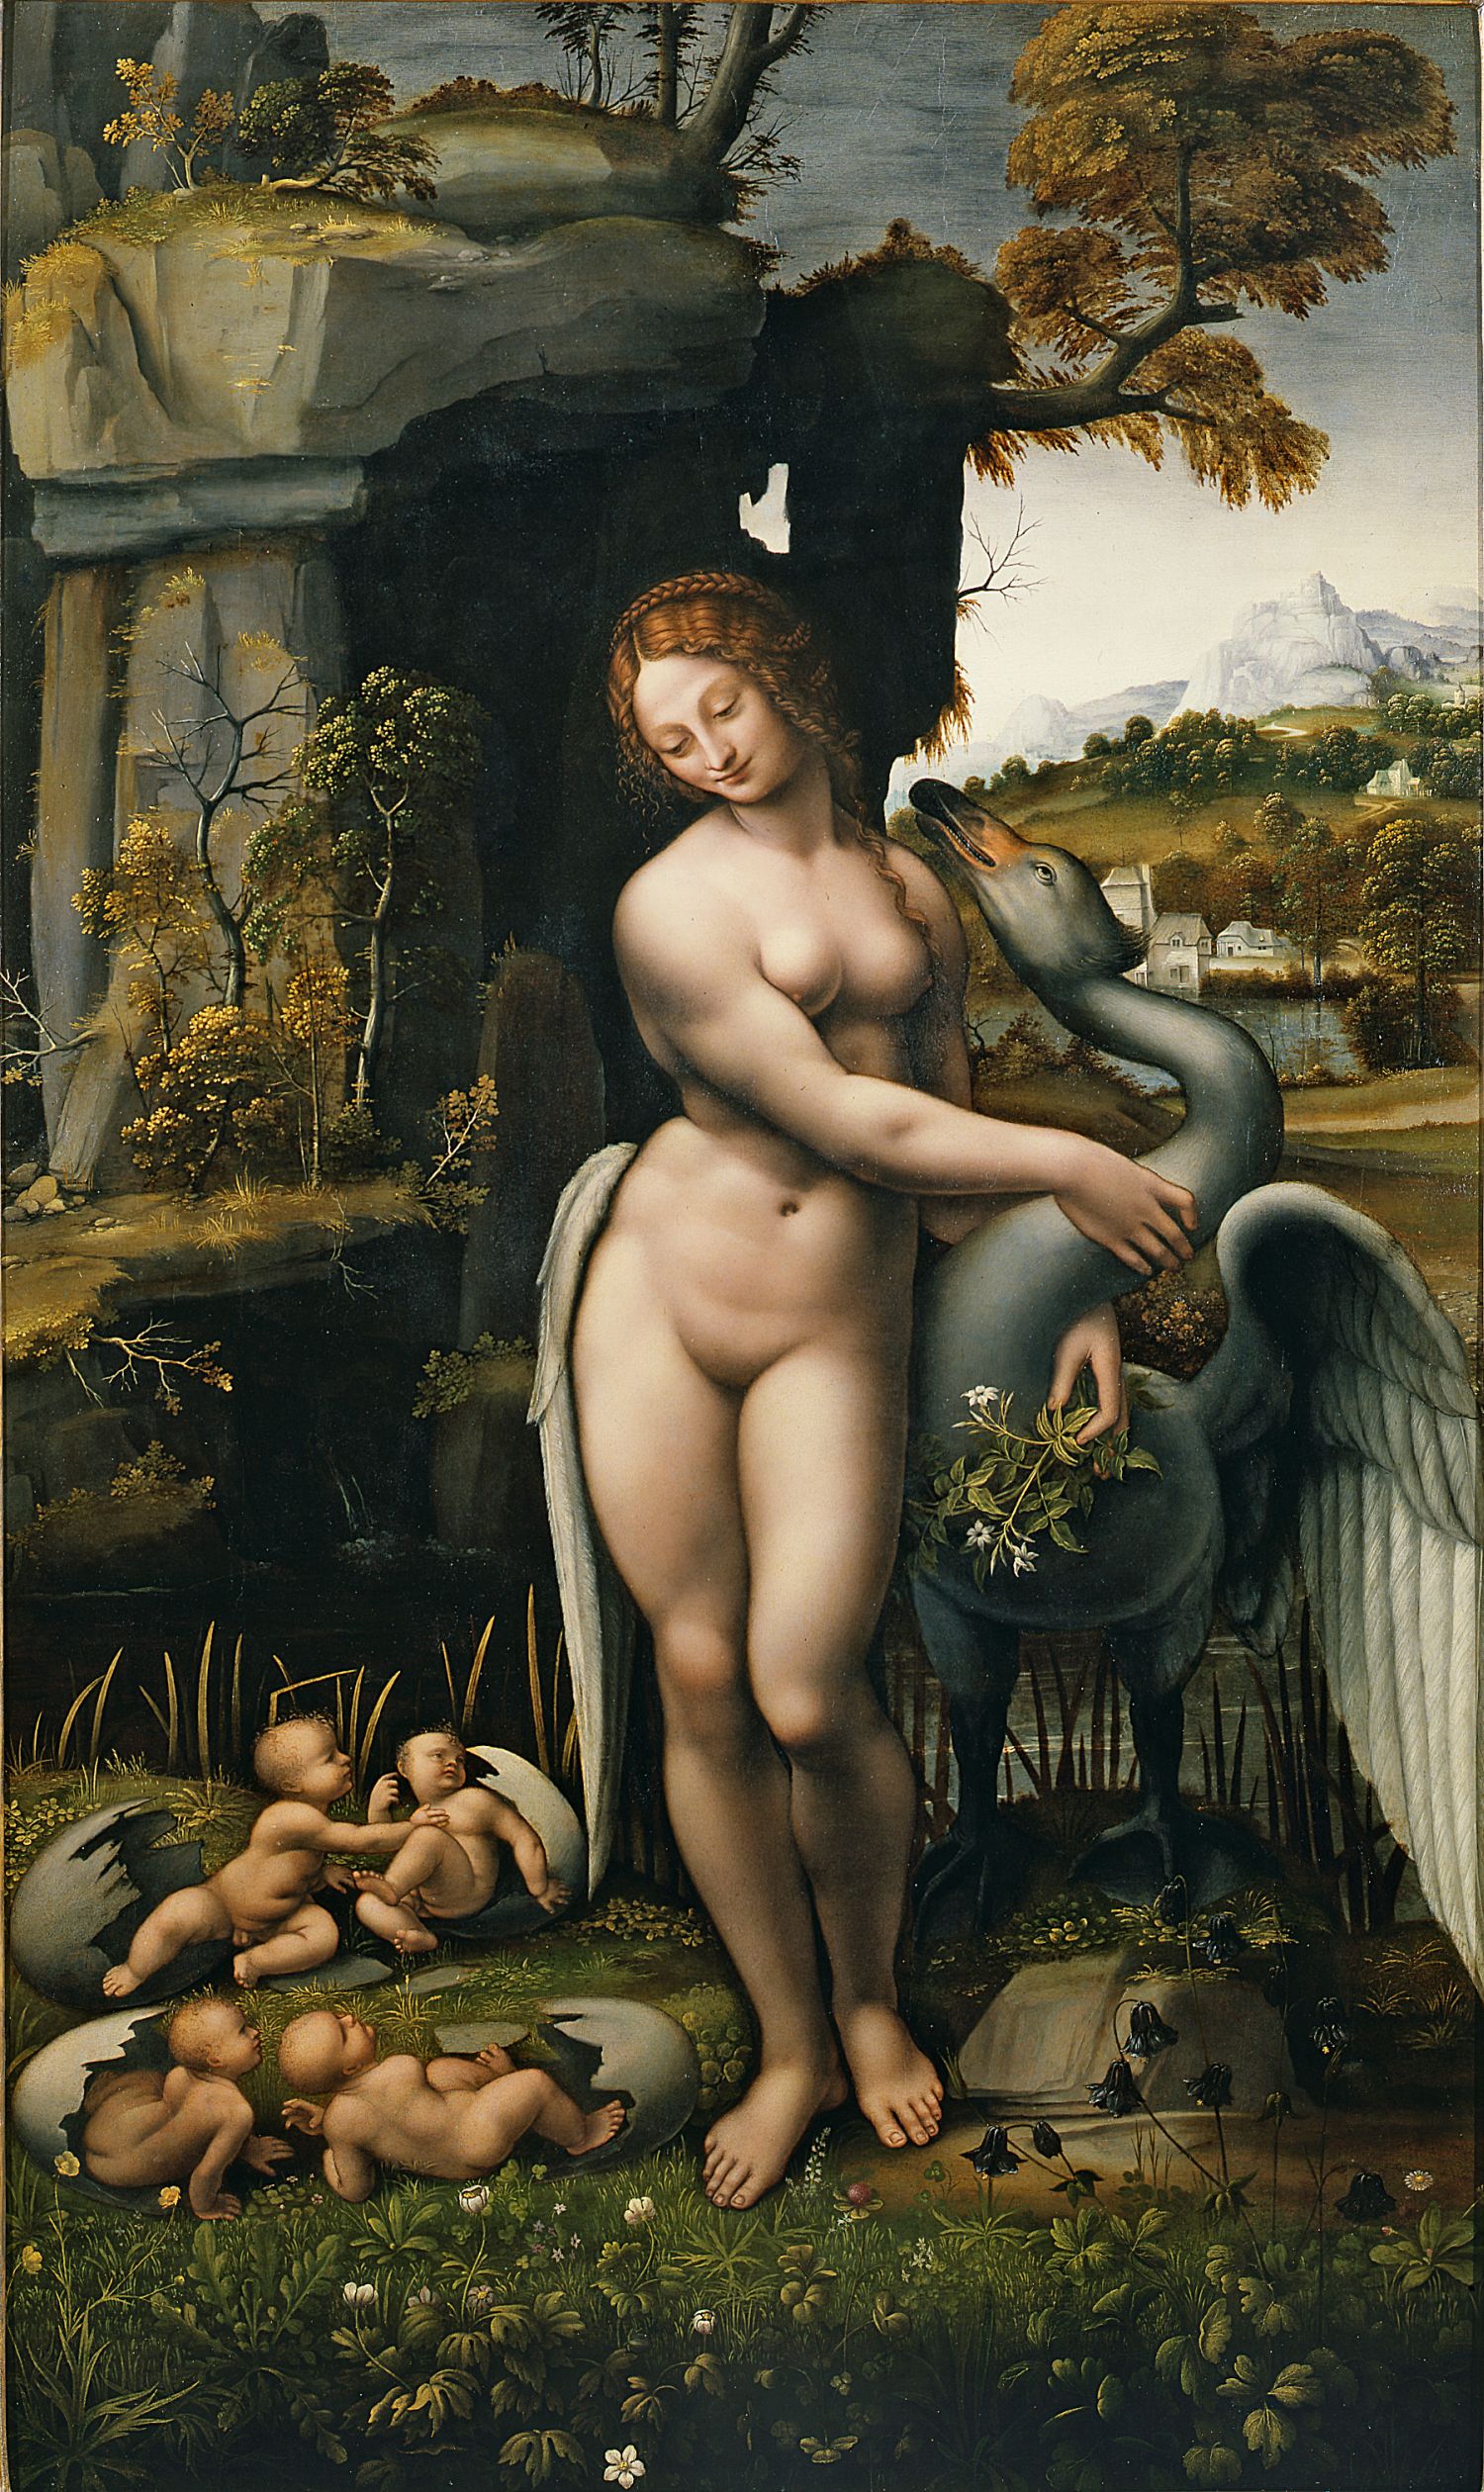 Pittore leonardesco, Leda e il cigno (1505-1507 circa; olio su tavola, 130 x 77,5 cm; Firenze, Gallerie degli Uffizi)